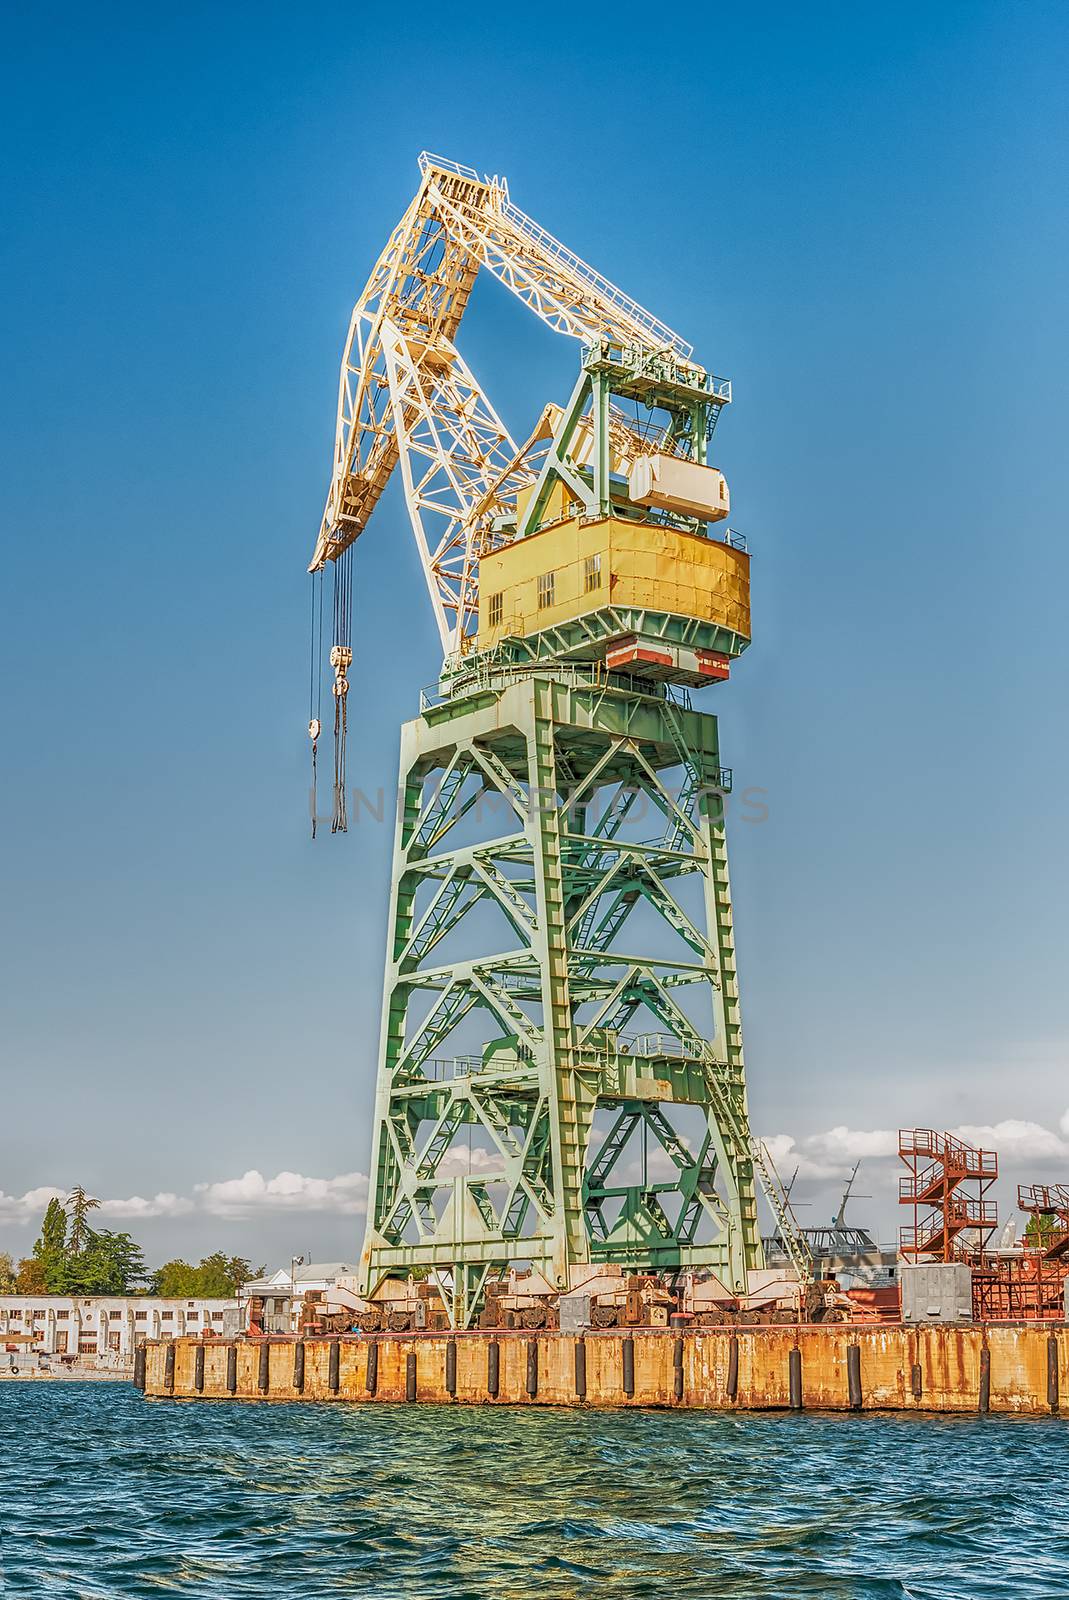 Tower crane in the quay of Sevastopol bay, Crimea by marcorubino